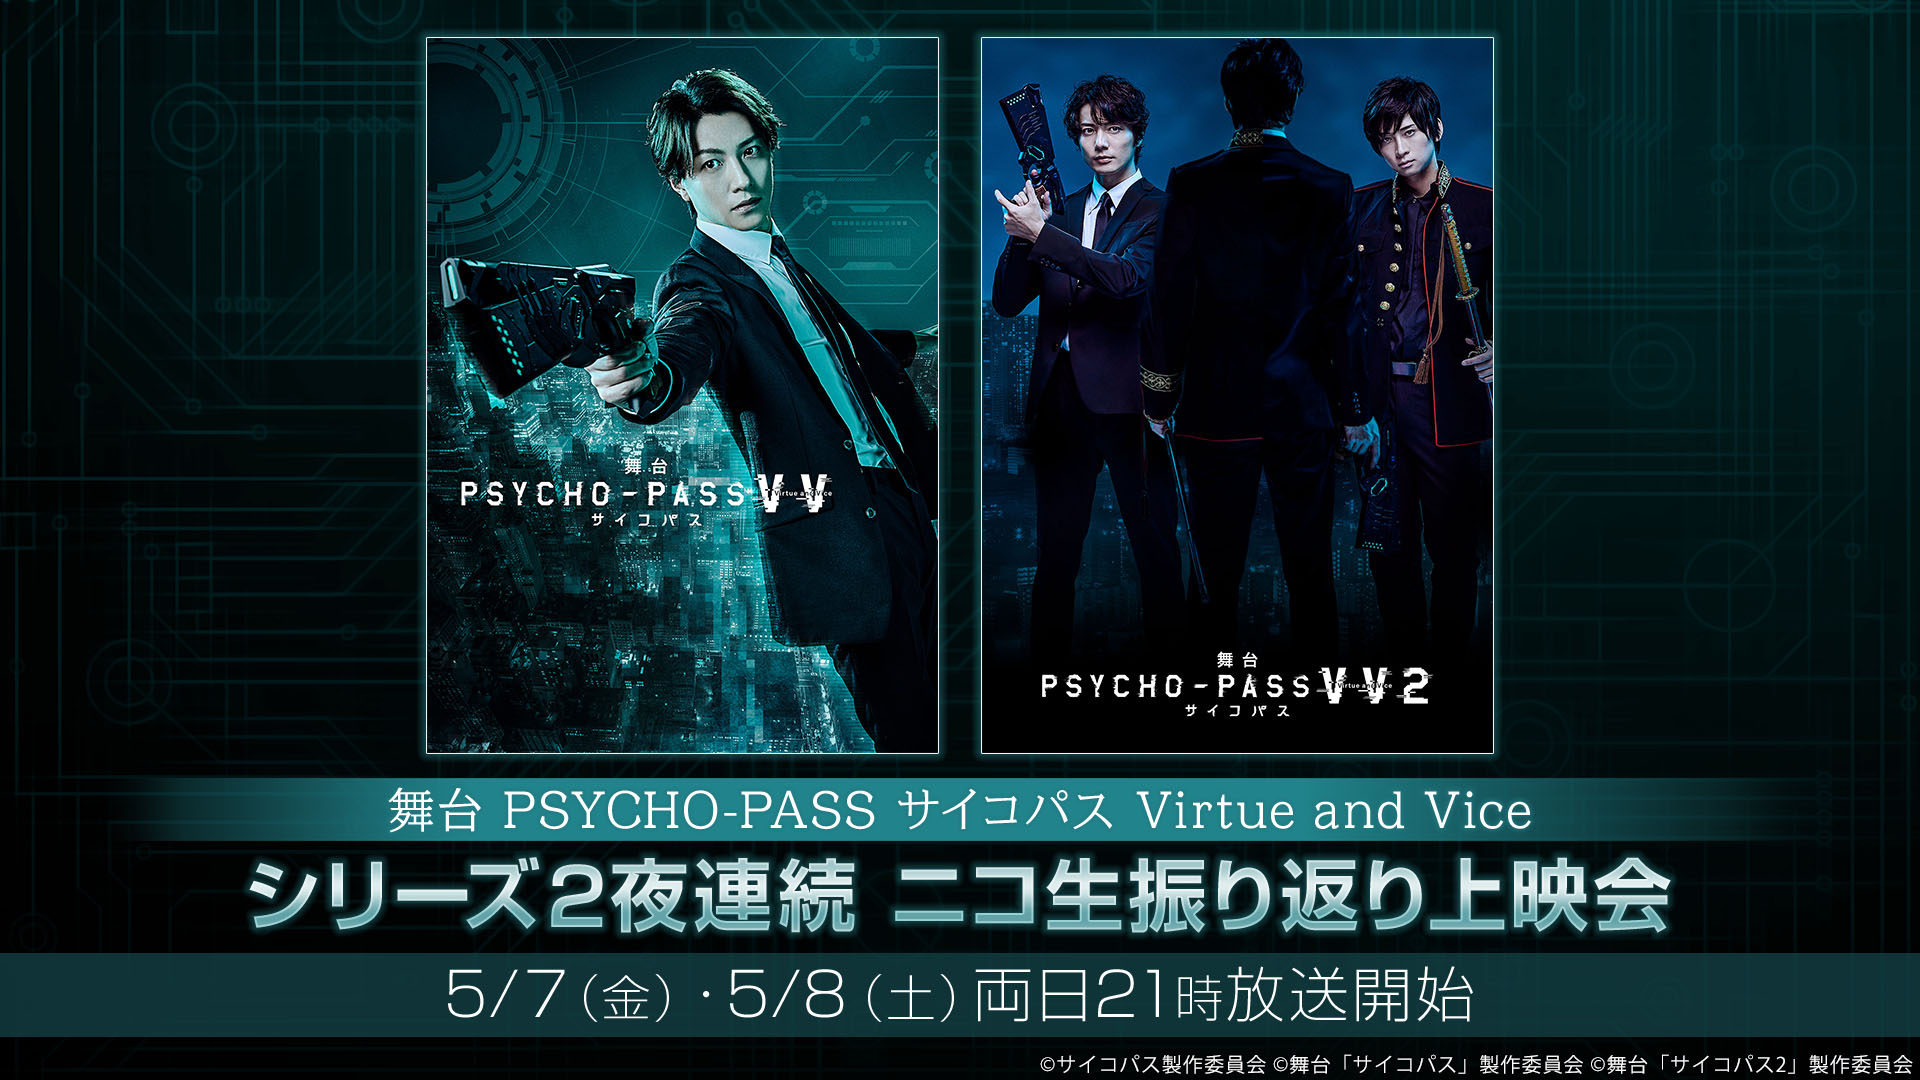 舞台 Psycho Pass サイコパス Virtue And Vice シリーズ2作品 2夜連続上映 ニコニコインフォ